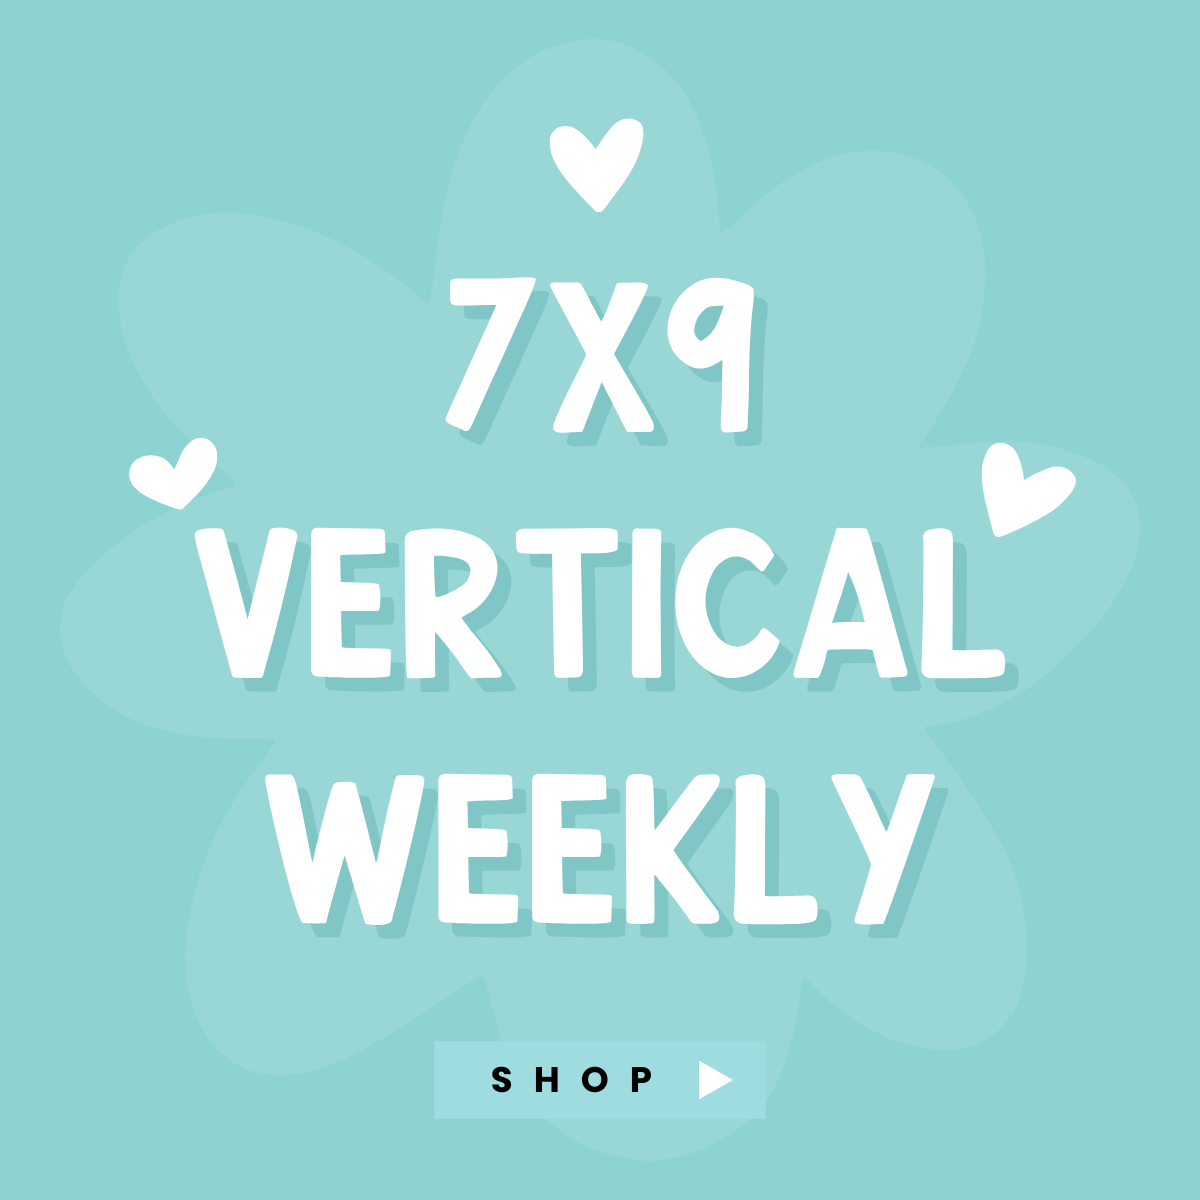 7x9 Vertical Weekly